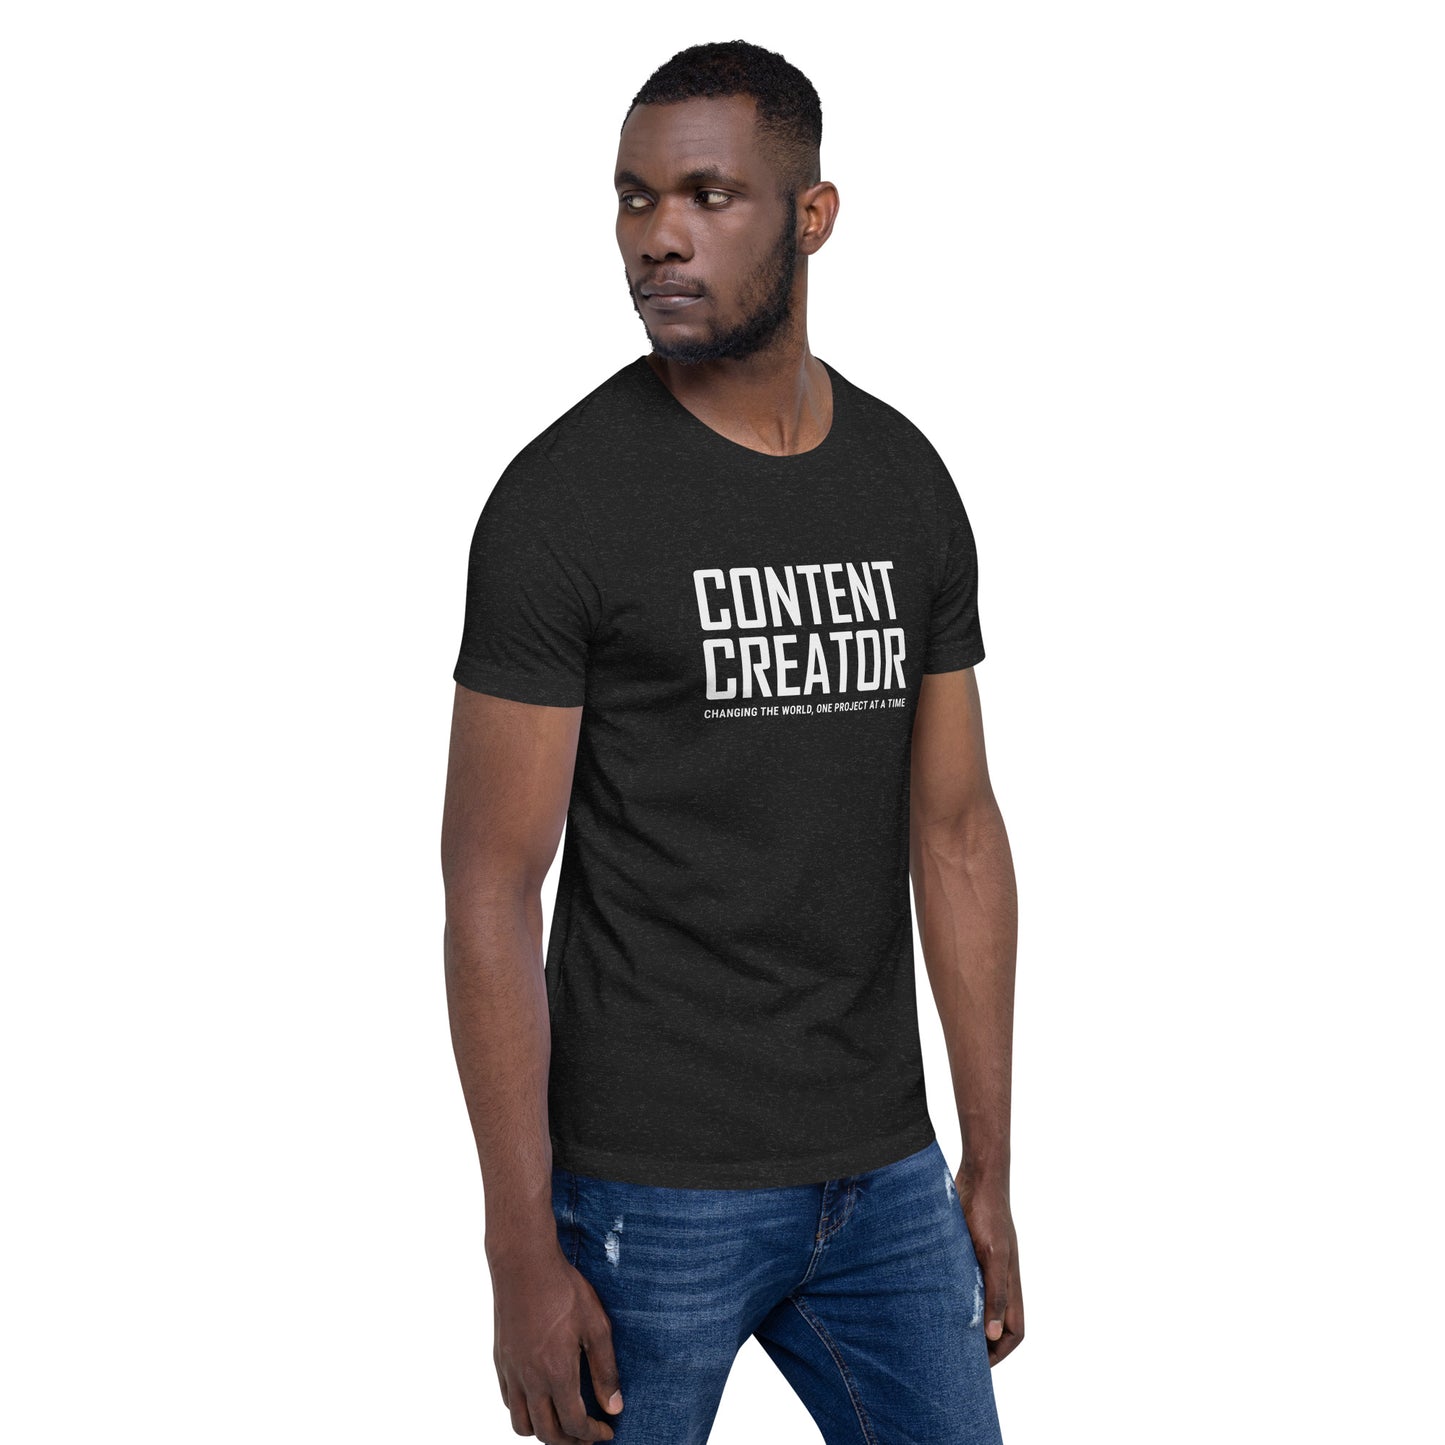 CONTENT CREATOR - Unisex T-shirt